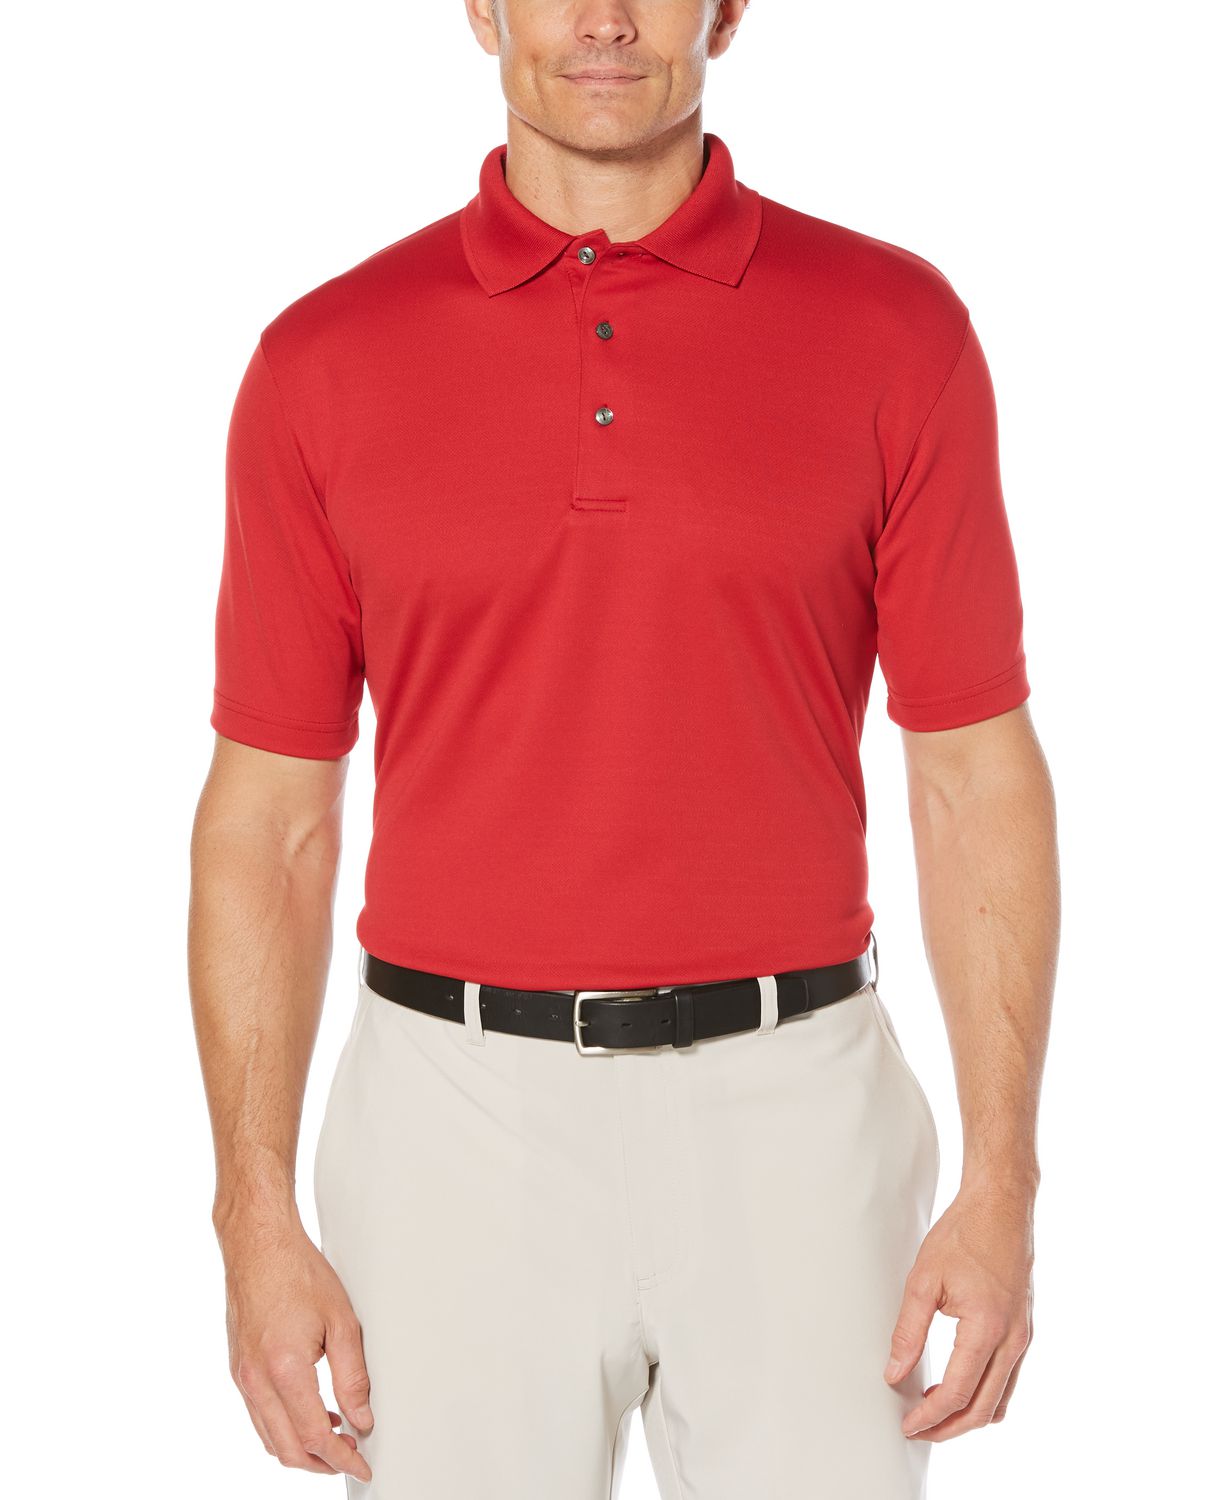 Ben Hogan Men's Golf Performance Solid Textured short Sleeve Polo Shirt ...